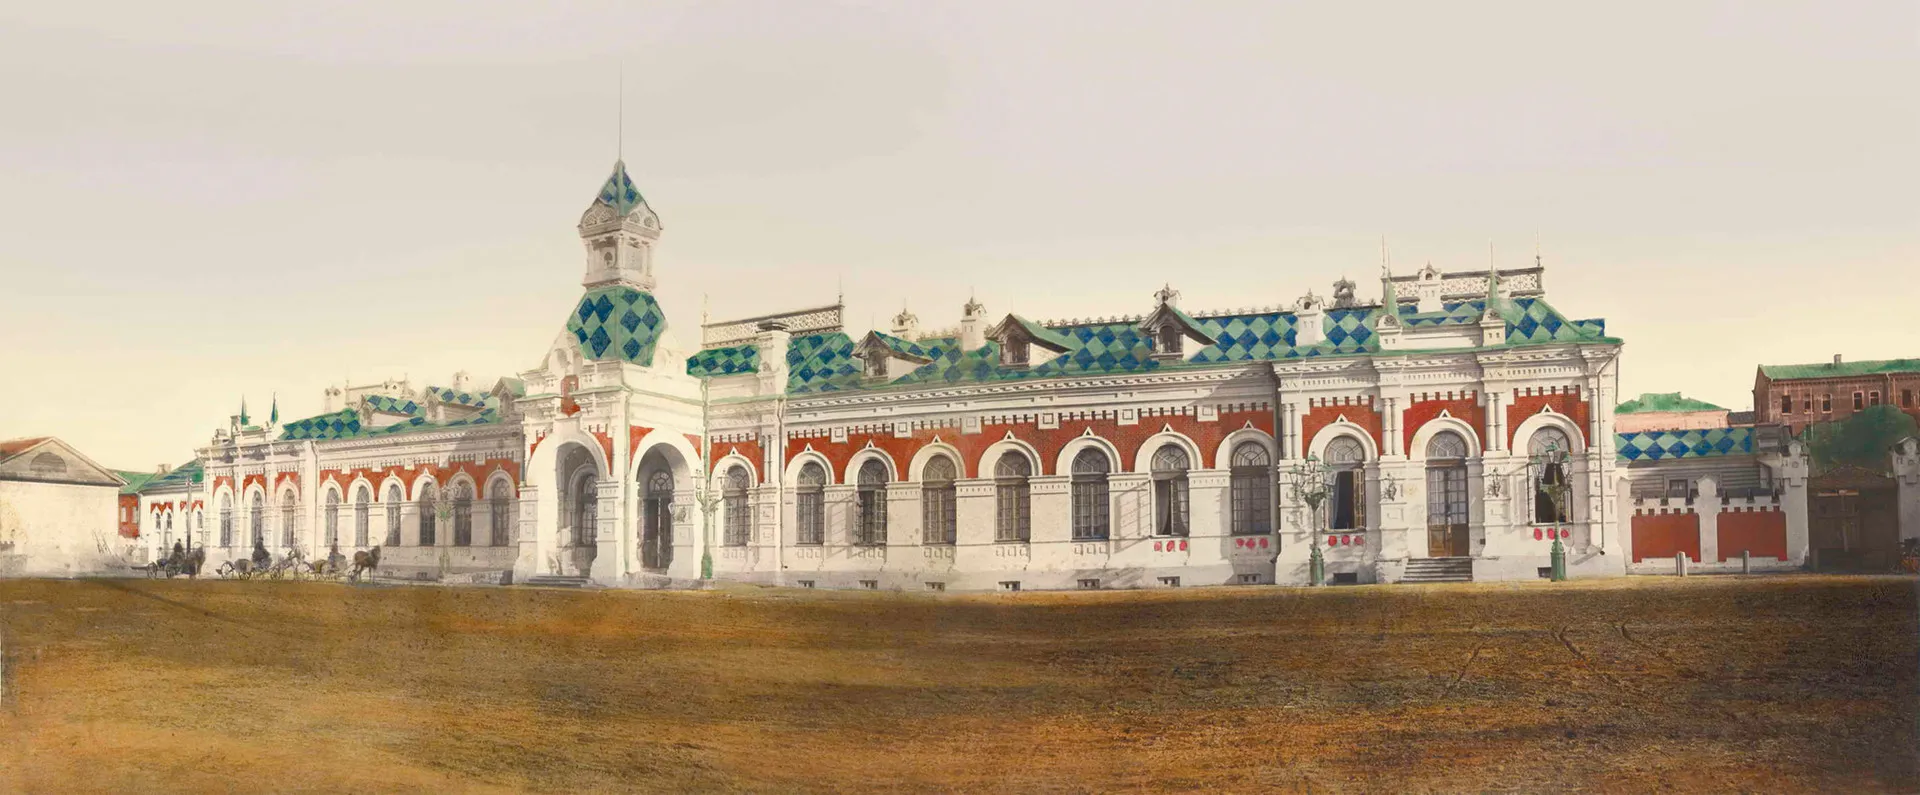 Железнодорожный вокзал (Пермь I), вторая половина XIX в. / The Railway Station (Perm I), the second half of the XIX century